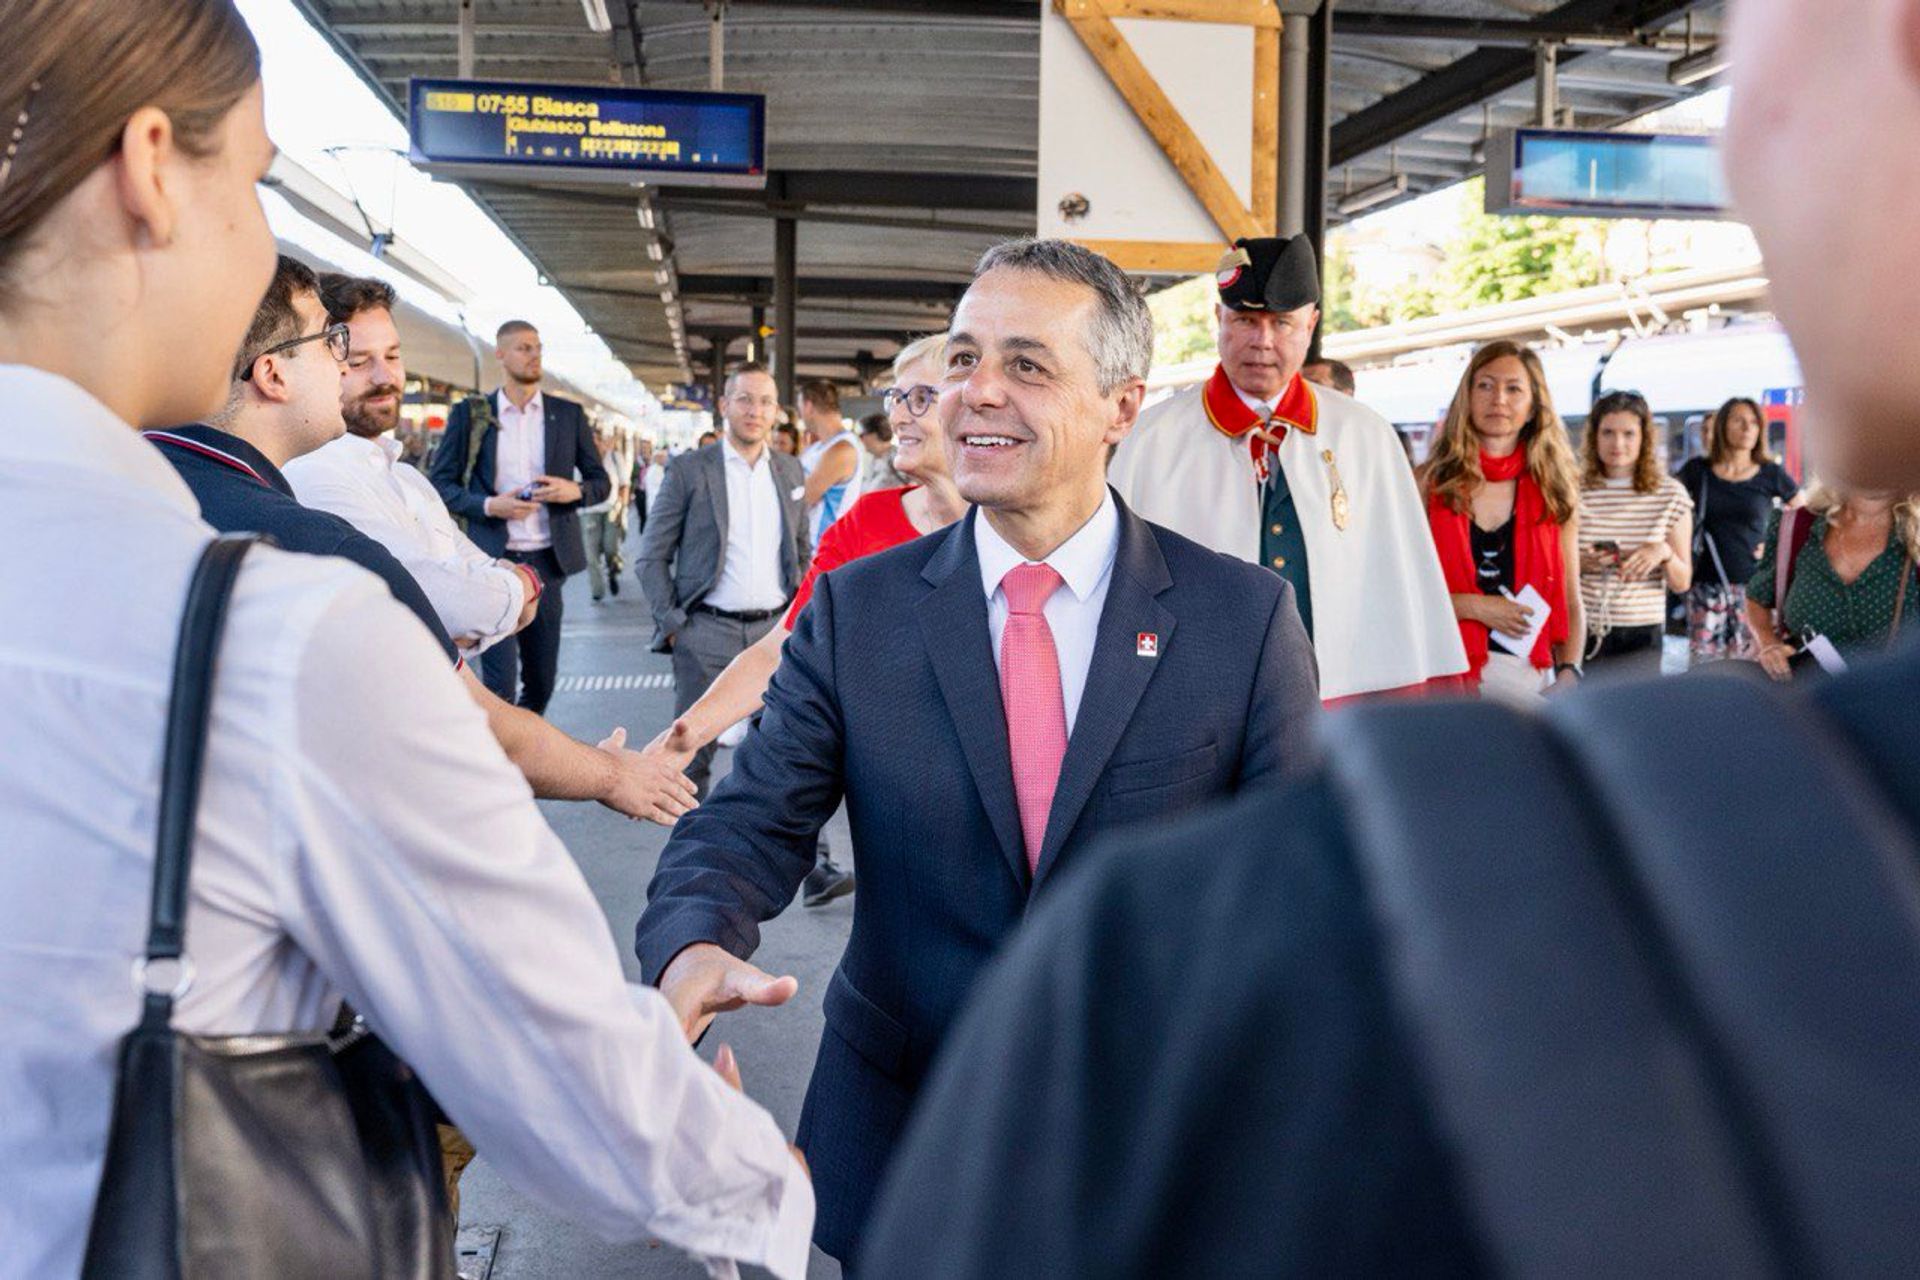 La partenza di Ignazio Cassis, Presidente della Confederazione Svizzera, la mattina dell'1 agosto 2022 dalla stazione ferroviaria di Lugano